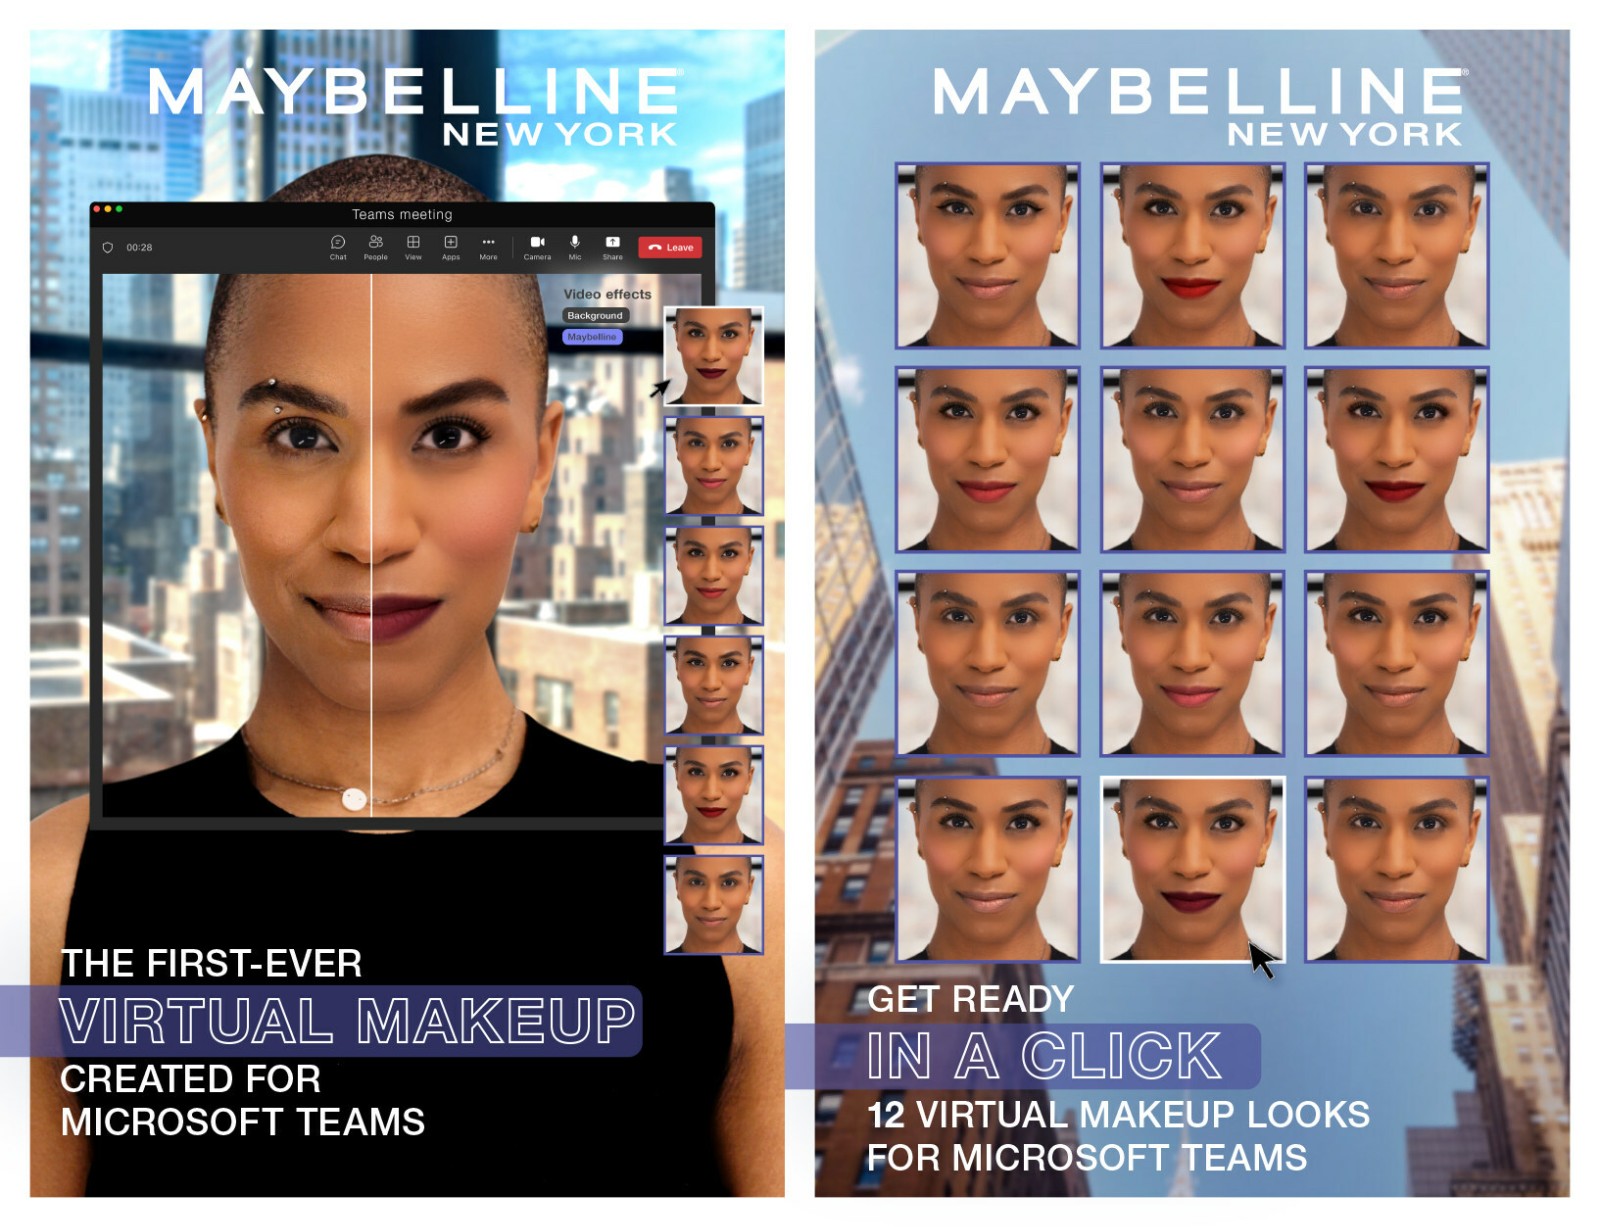 Maybelline_Virtual_Makeup.jpg